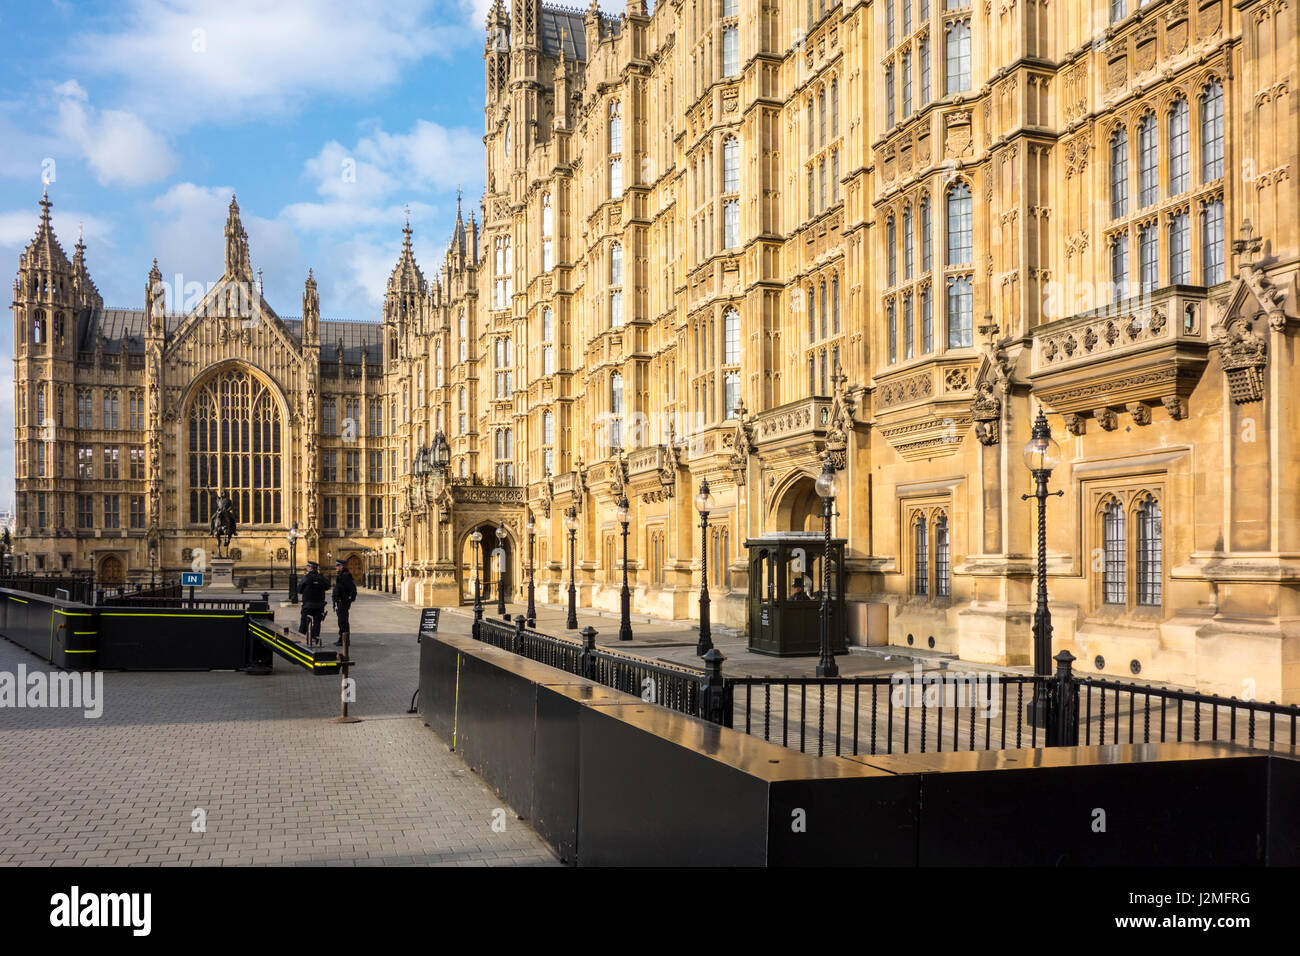 Bornes de sécurité ou l'anneau de protection en acier à l'extérieur du palais de Westminster (Parlement, Chambre des Lords) Westminster, London, UK Banque D'Images